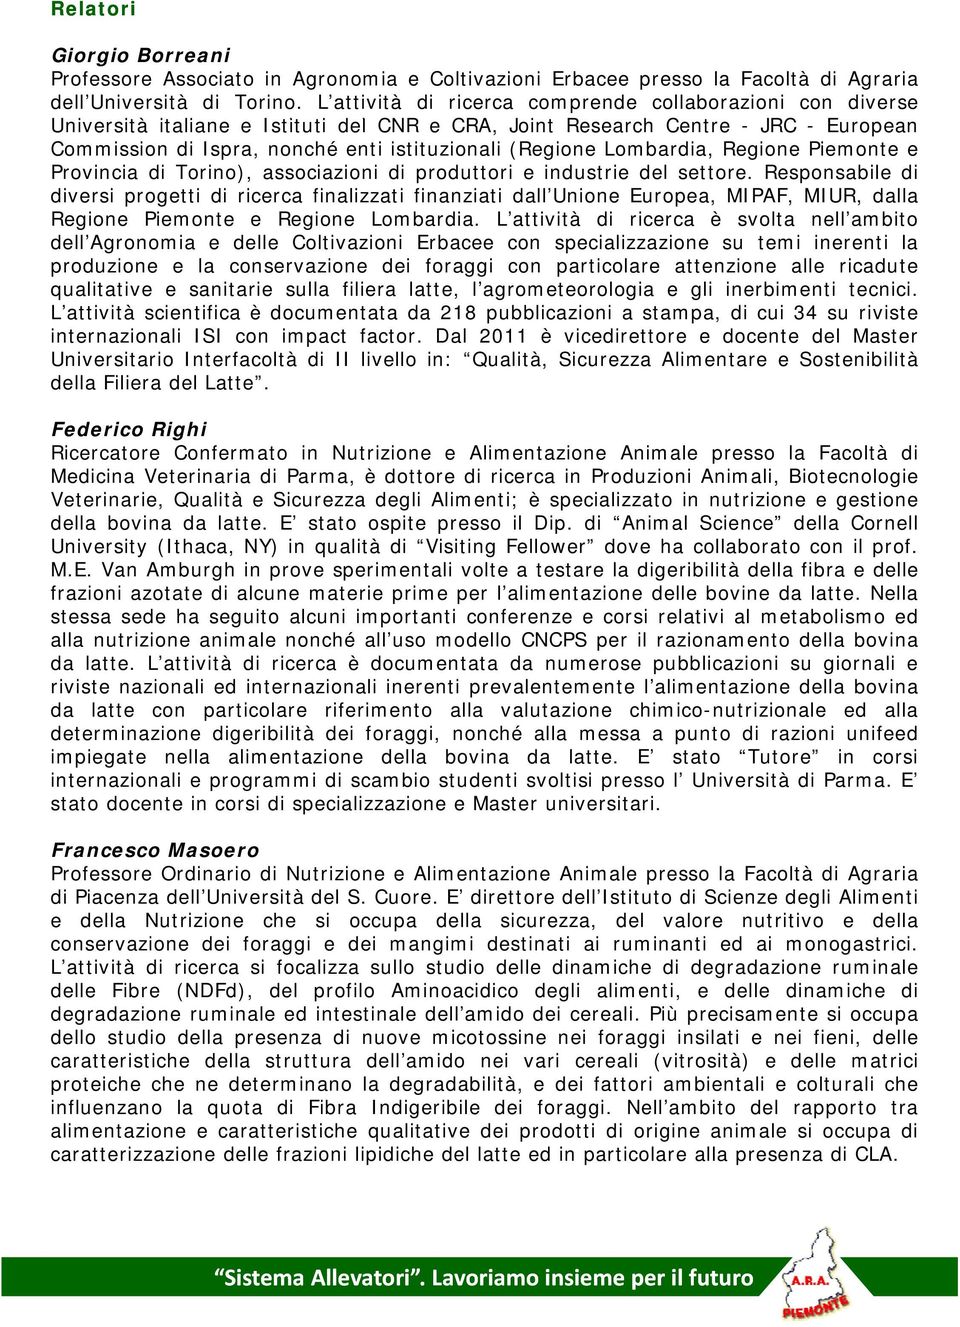 (Regione Lombardia, Regione Piemonte e Provincia di Torino), associazioni di produttori e industrie del settore.